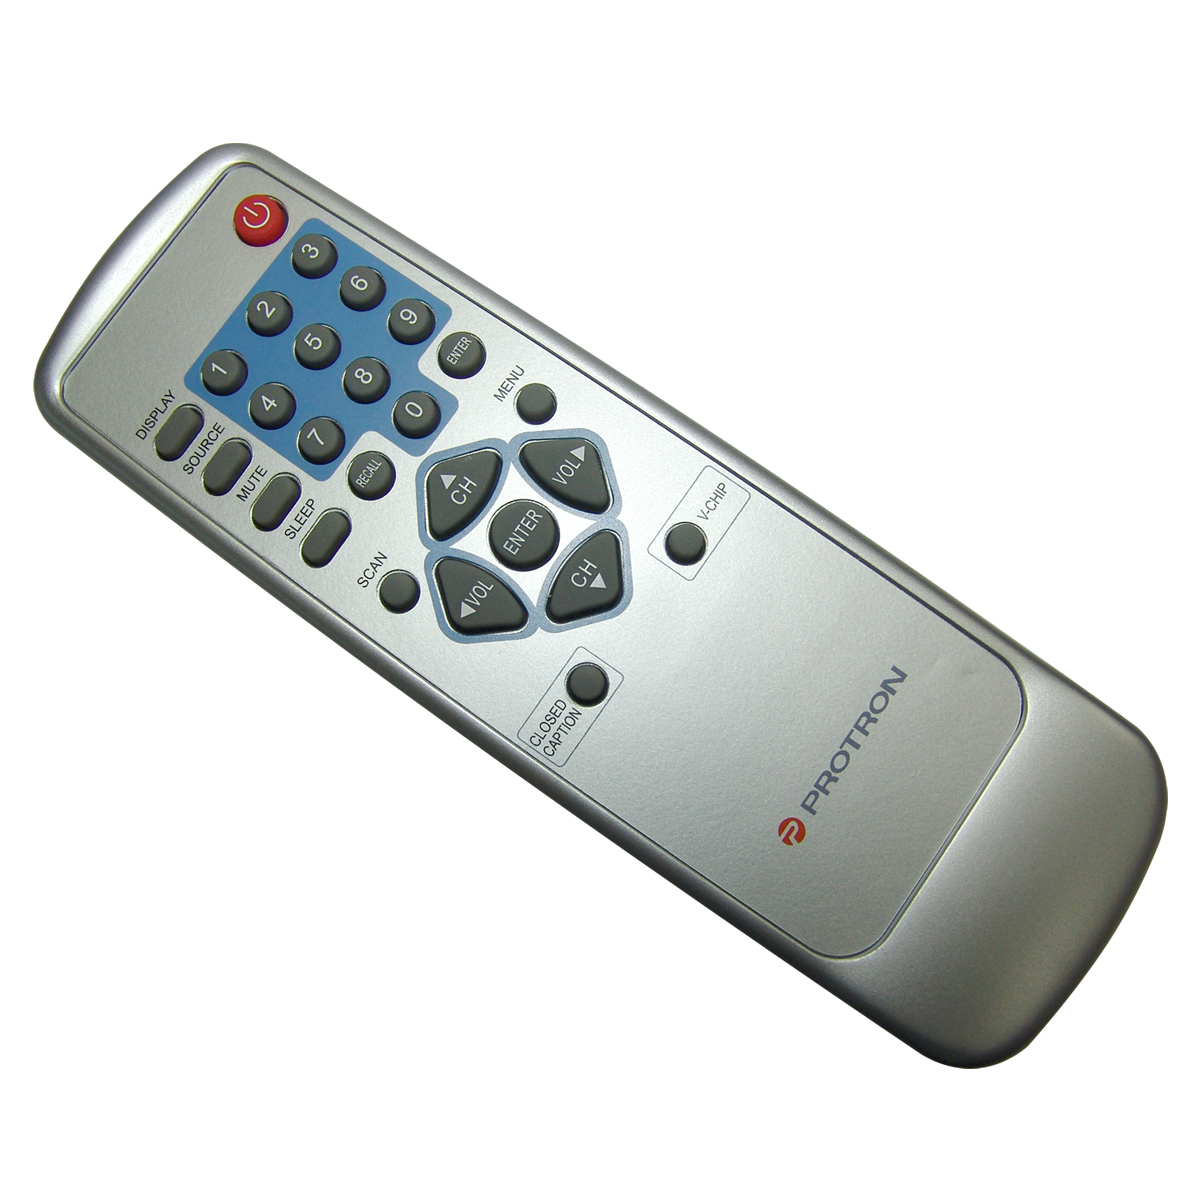 Original Protron Remote Control for Pltv-32 / Pltv32 TV Television